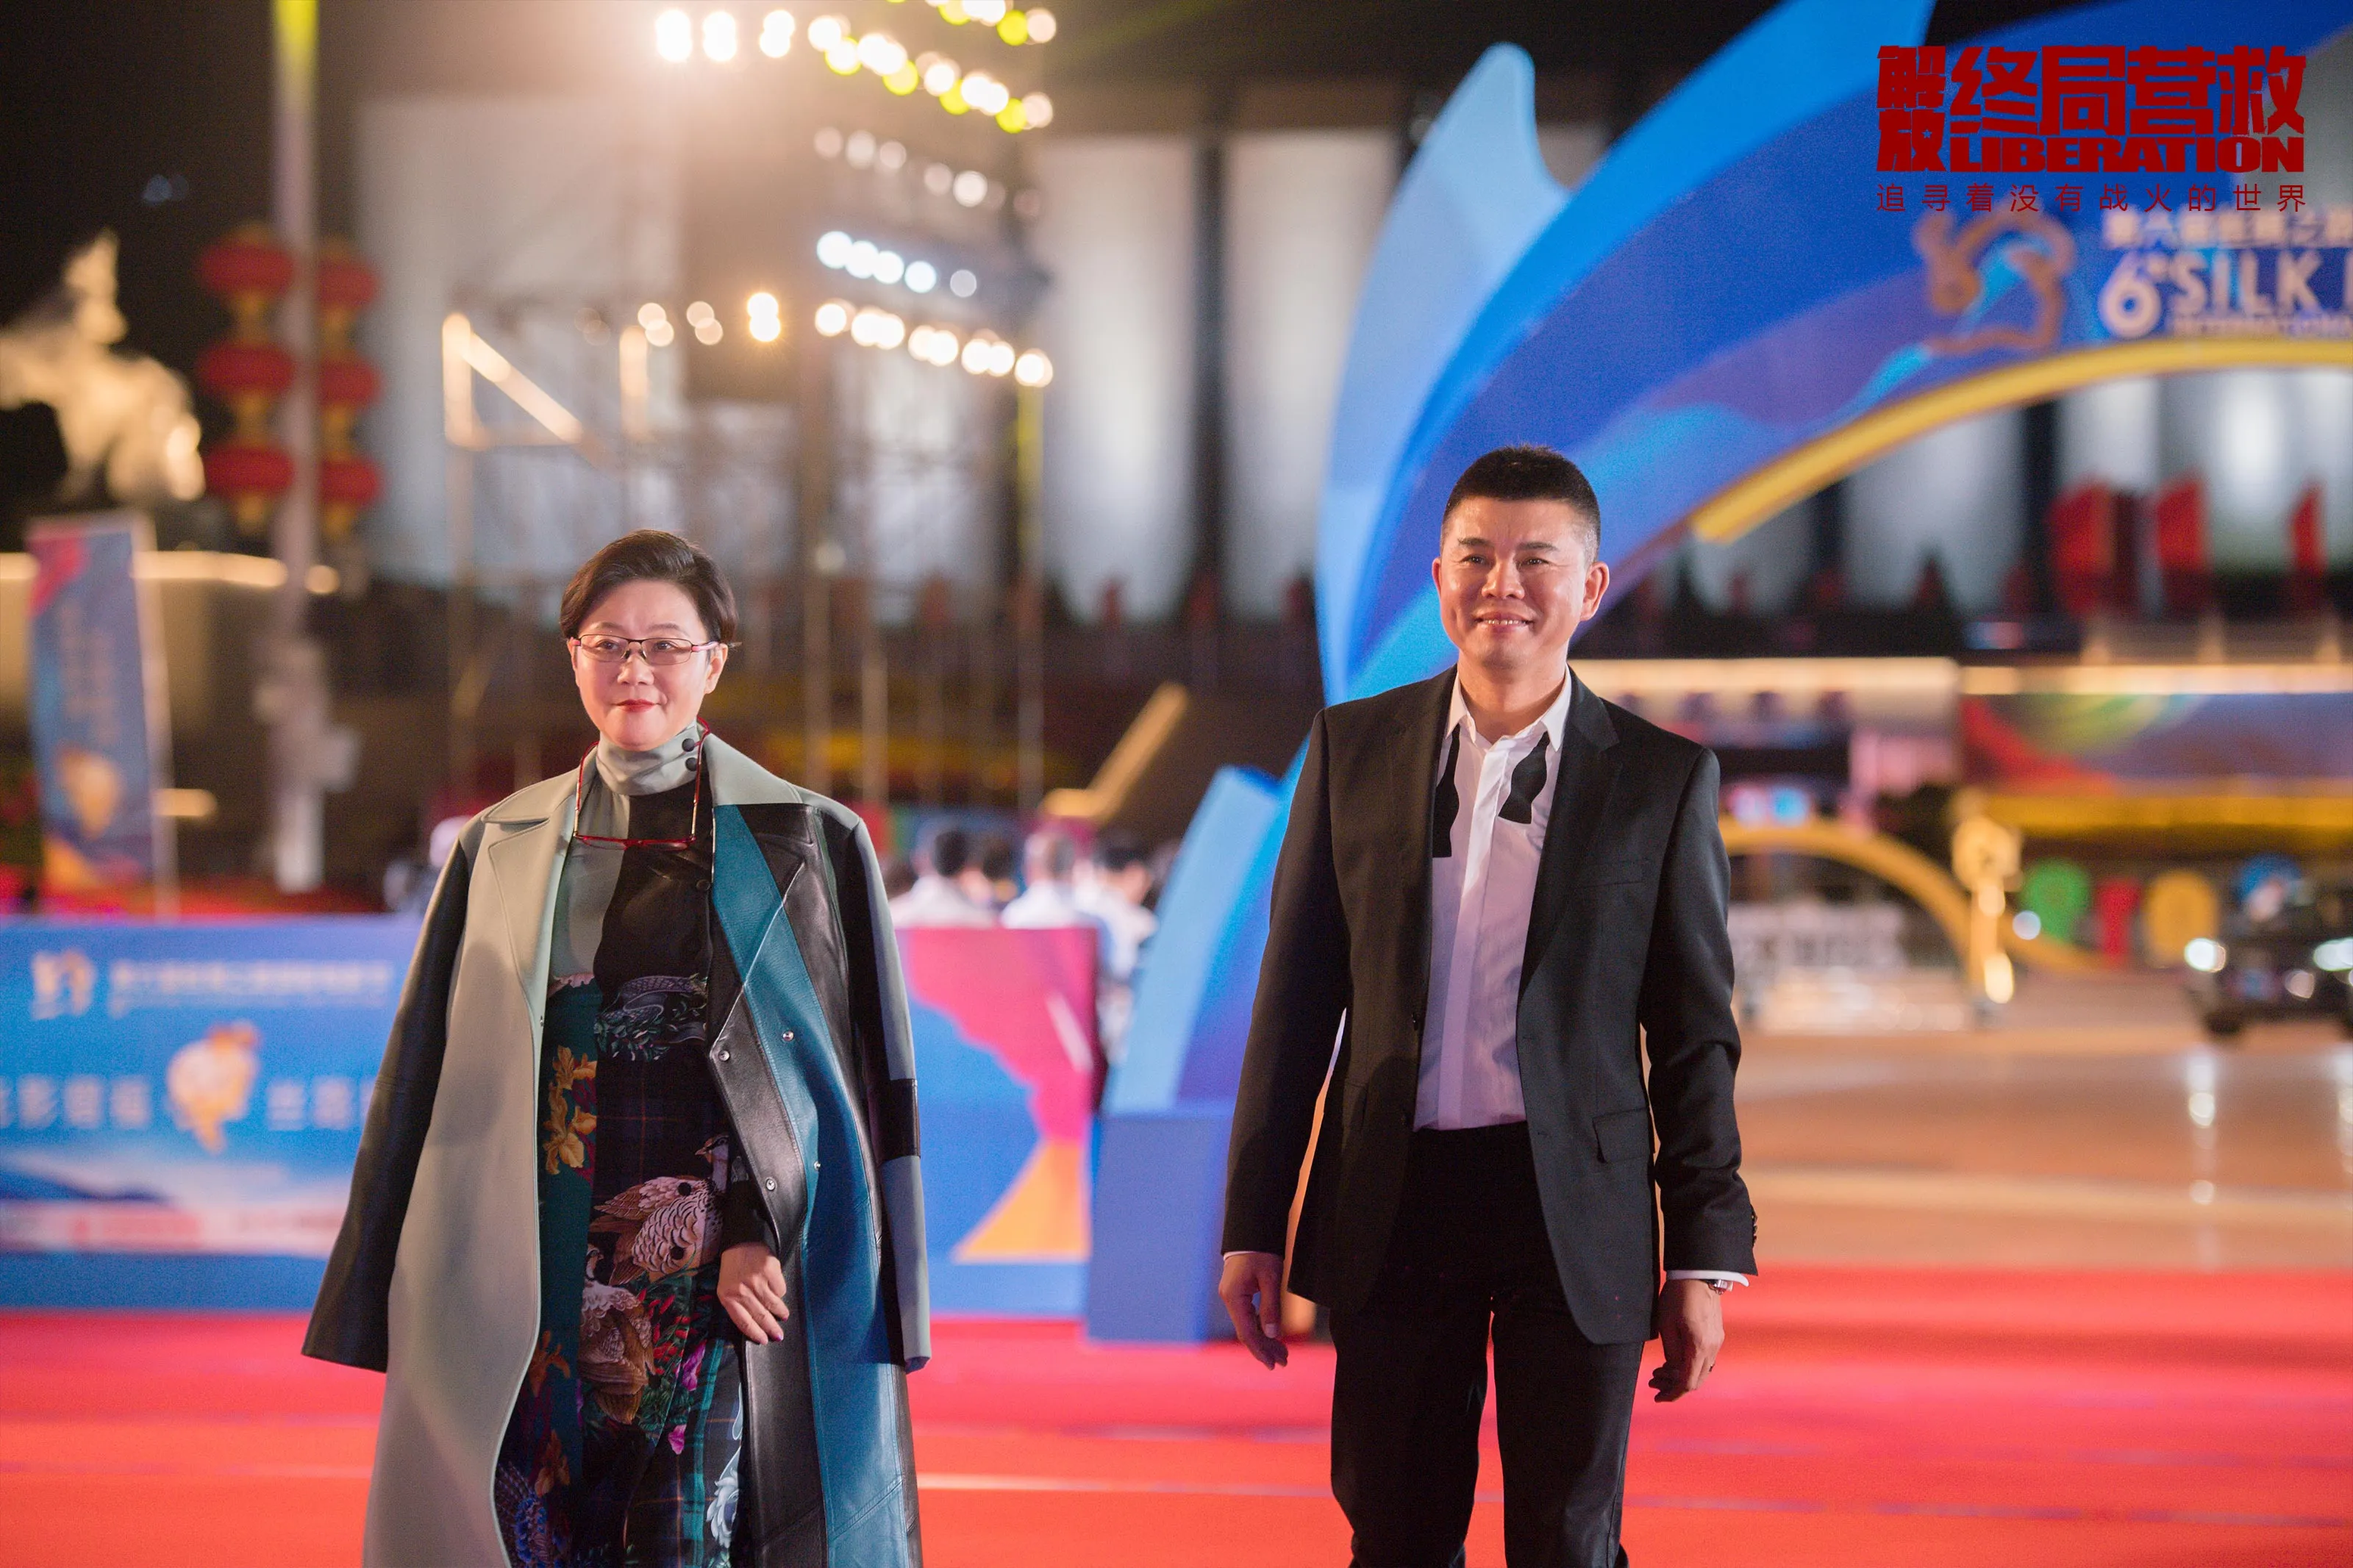 总监制兼总导演 Li Shaohong 和导演 Chang Xiao Yang 亮相红毯-2（摄影：陈暖）.jpg